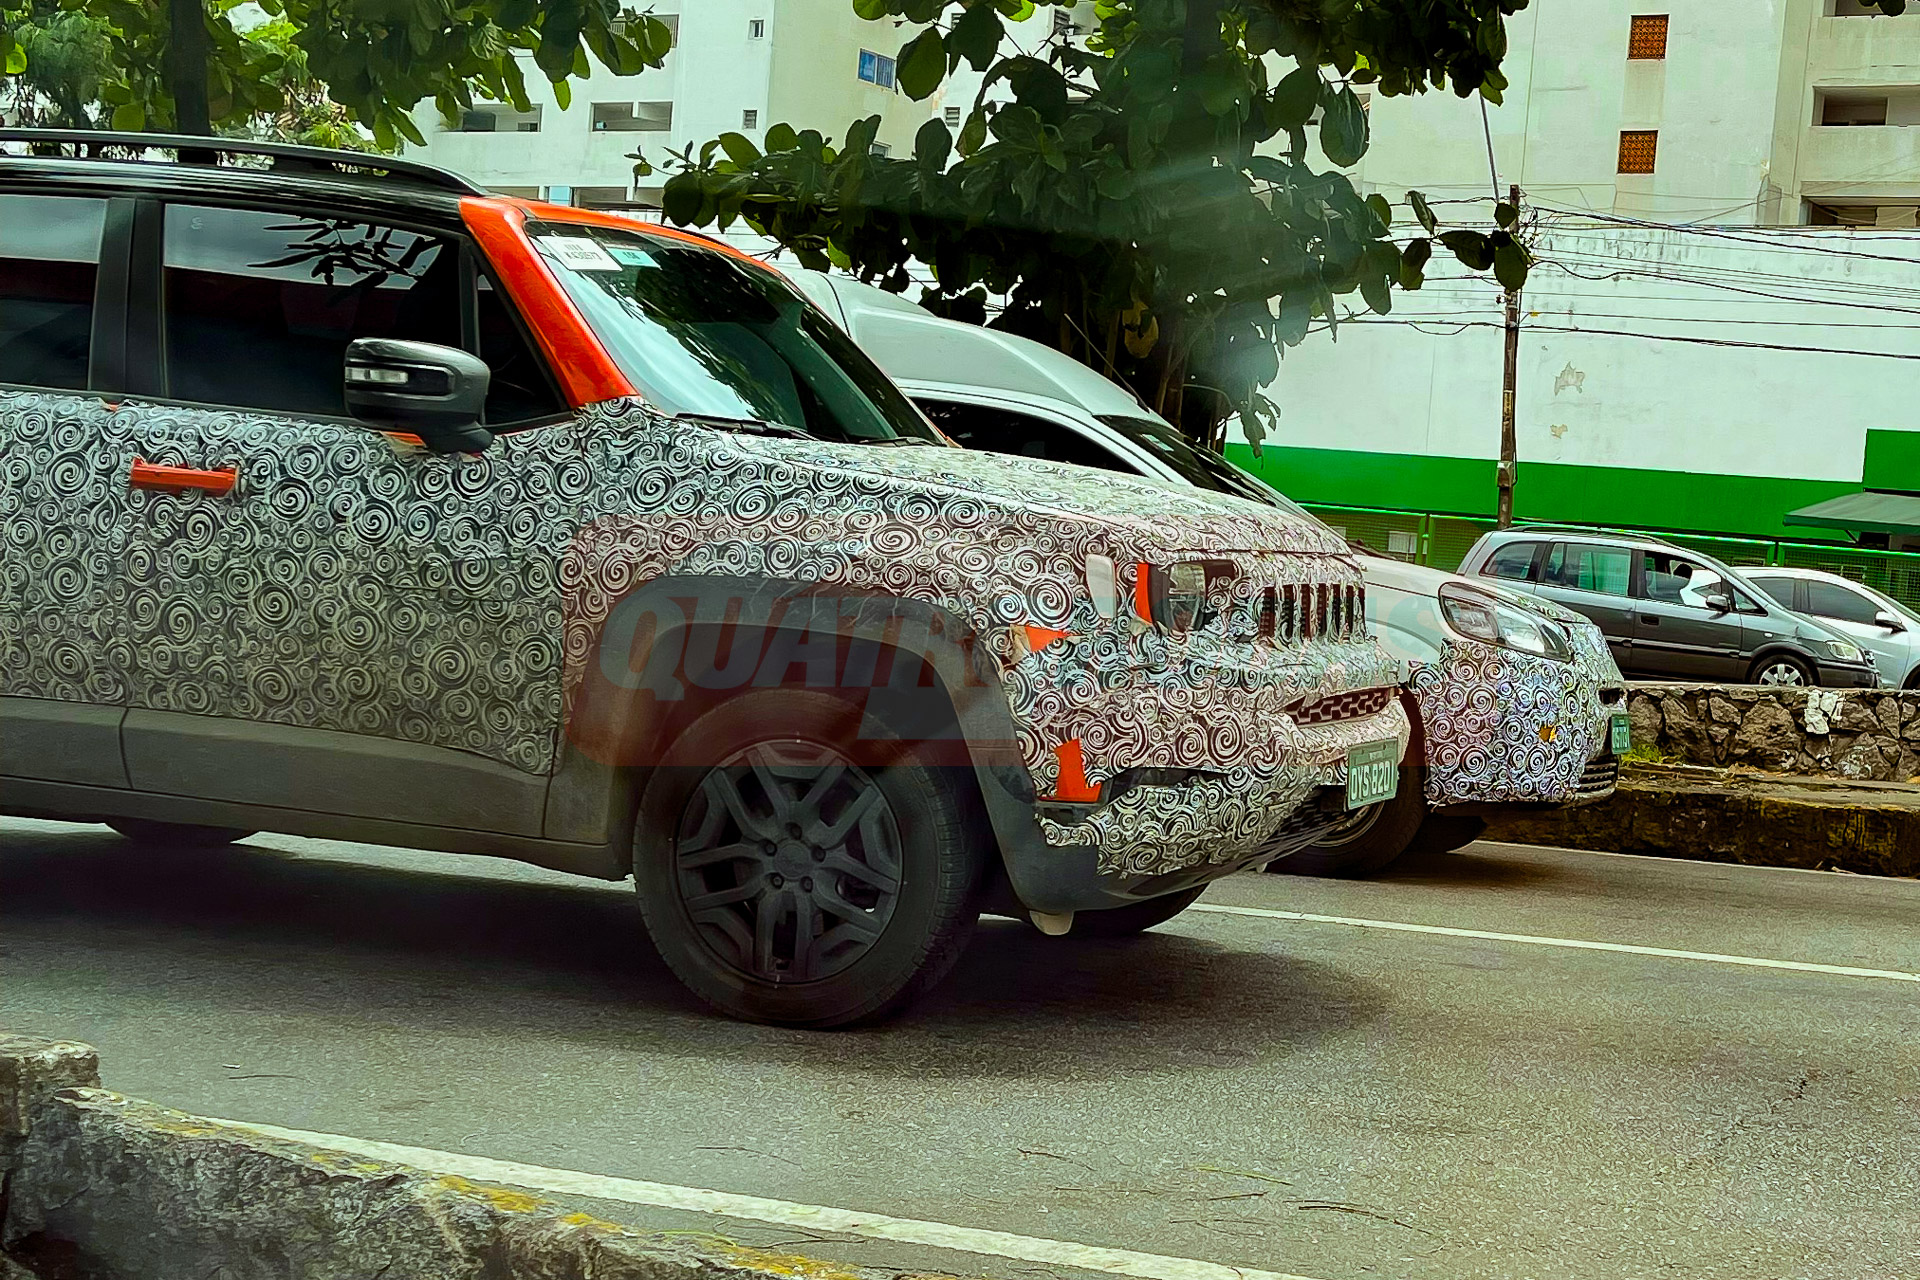 Acompanhado de um Fiat Fiorino, Jeep Renegade 2023 foi visto em Recife (PE) com detalhes inéditos